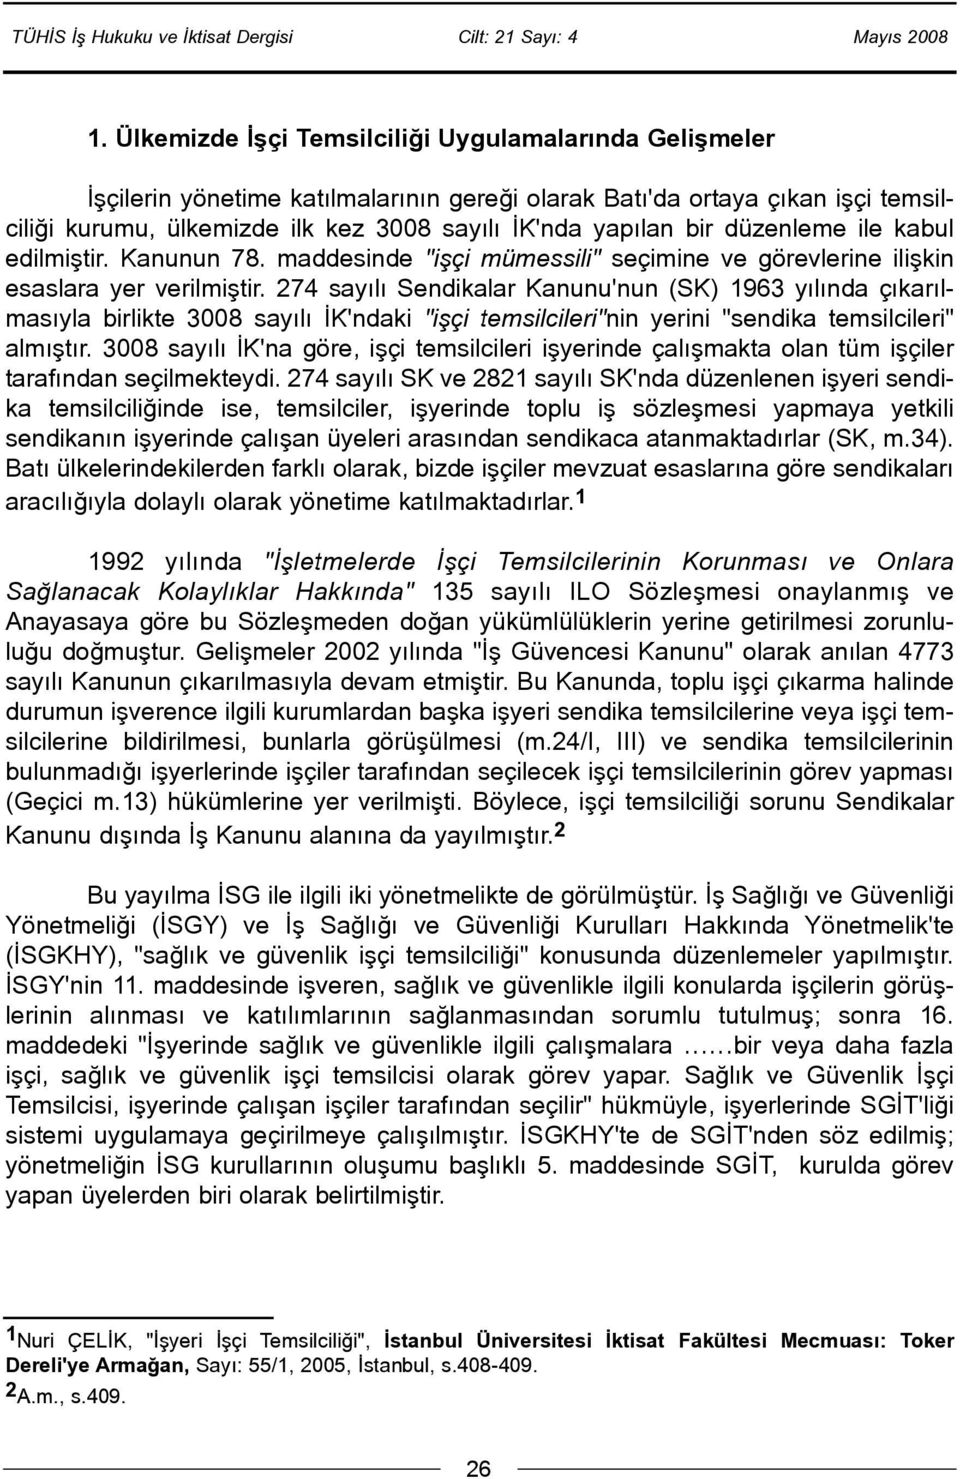 274 sayýlý Sendikalar Kanunu'nun (SK) 1963 yýlýnda çýkarýlmasýyla birlikte 3008 sayýlý ÝK'ndaki "iþçi temsilcileri"nin yerini "sendika temsilcileri" almýþtýr.